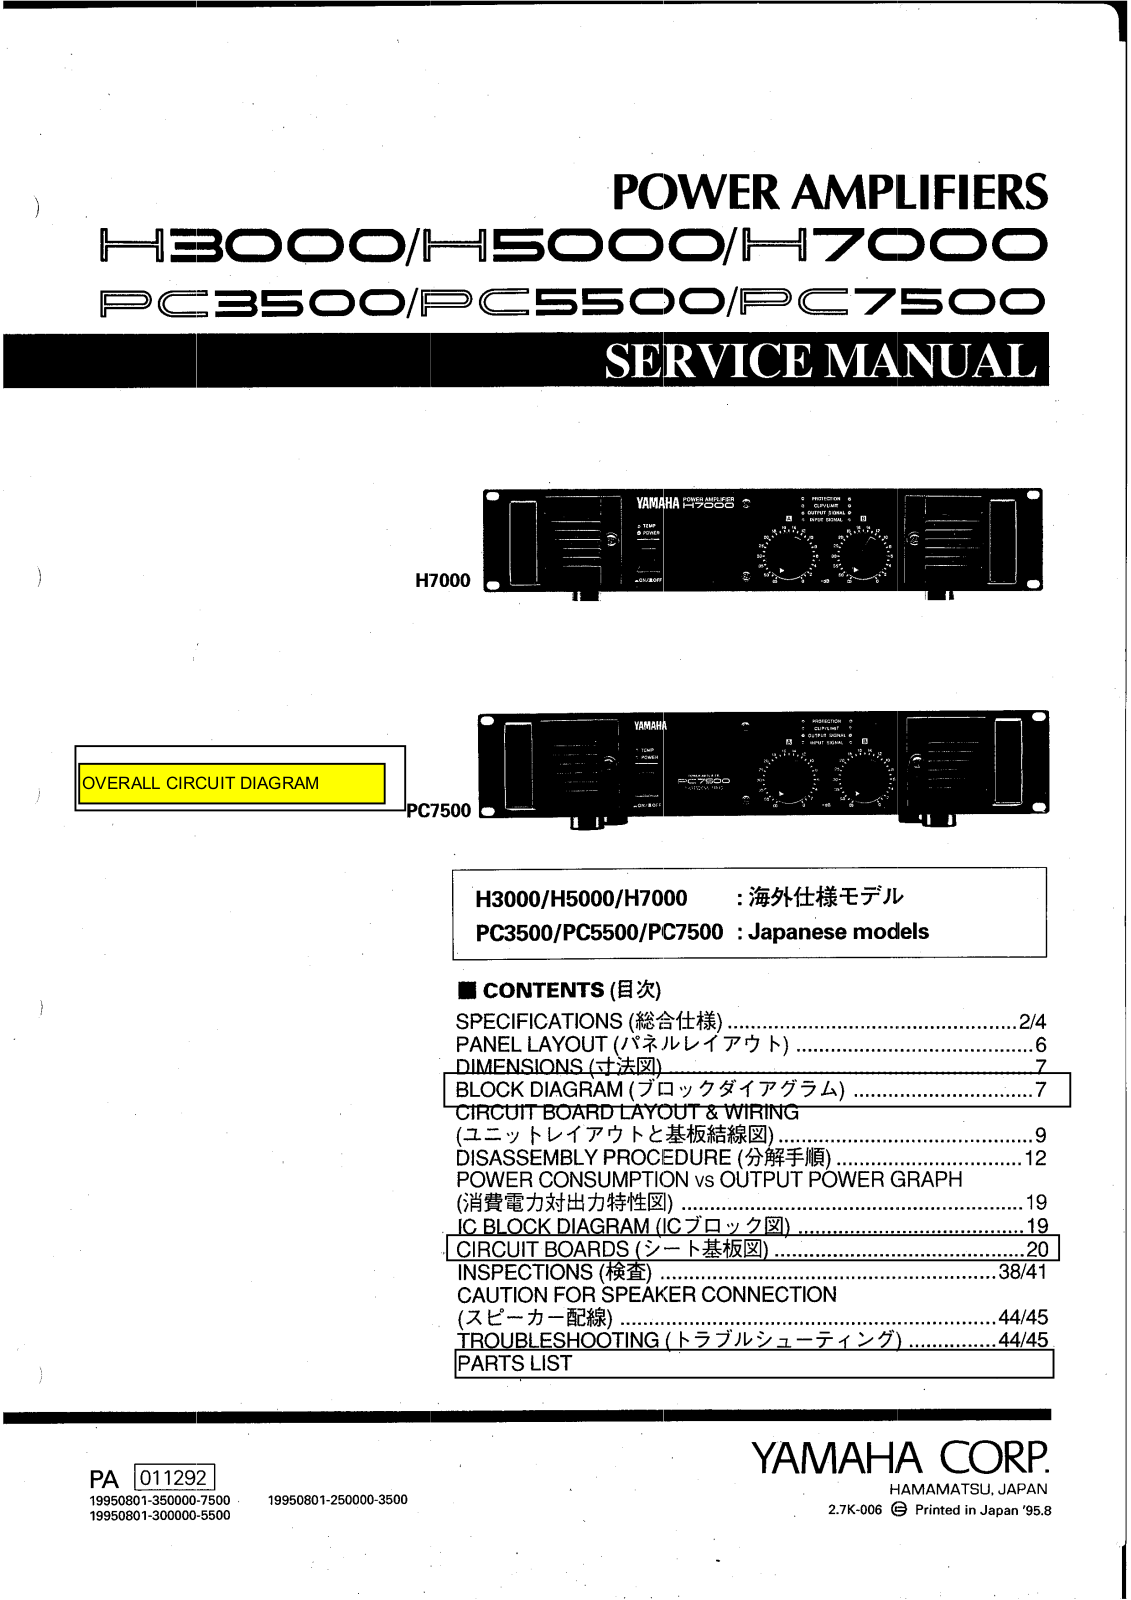 Yamaha h3000, h5000, h7000, pc3500, pc5500 User Manual